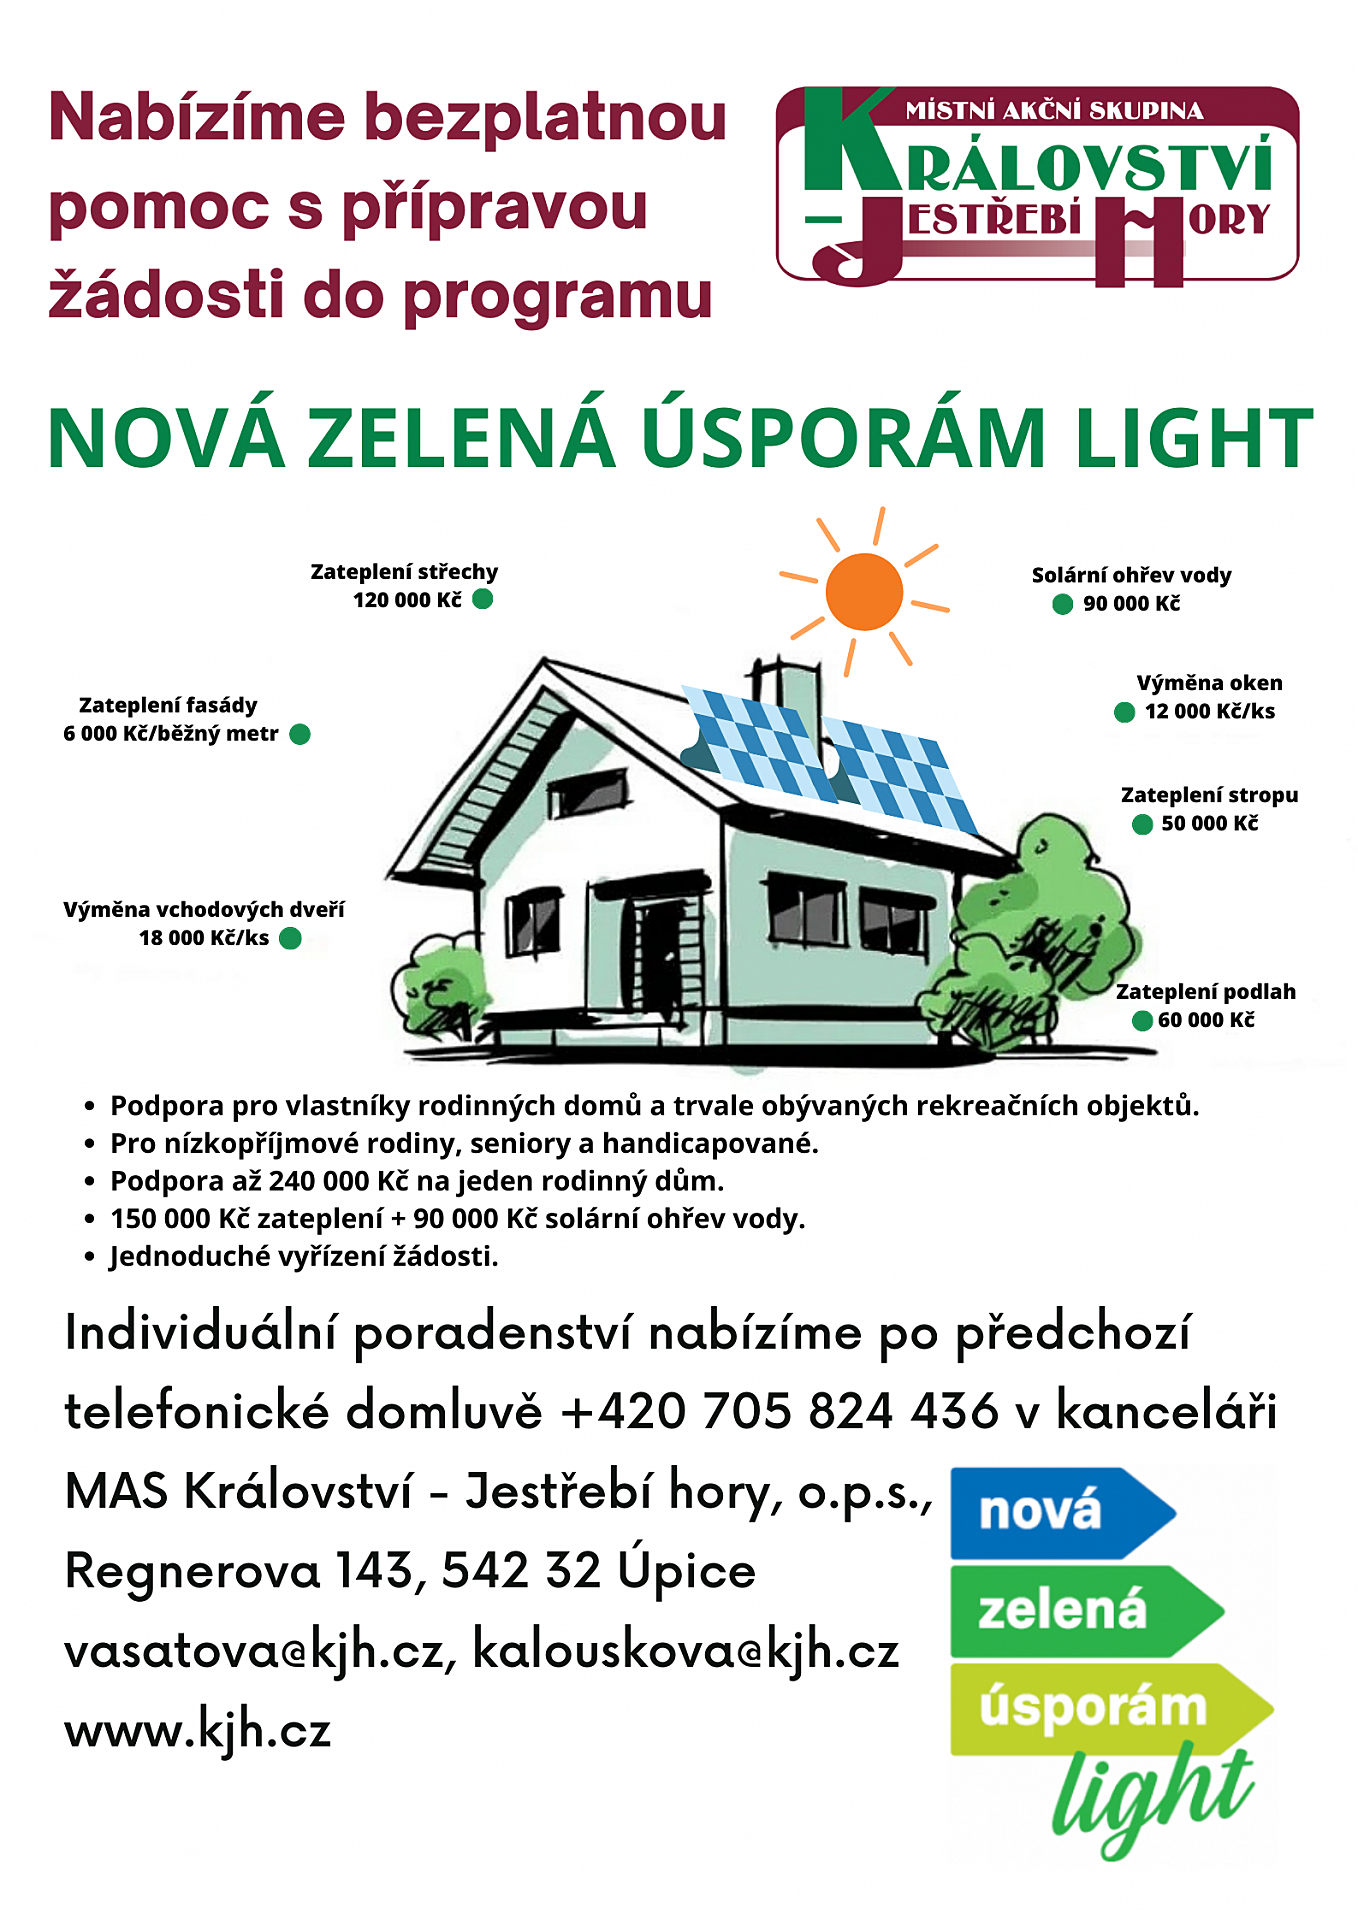 V Nové zelené úsporám Light odstartoval příjem žádostí o dotace na solární systémy pro seniory a domácnosti s nižšími příjmy